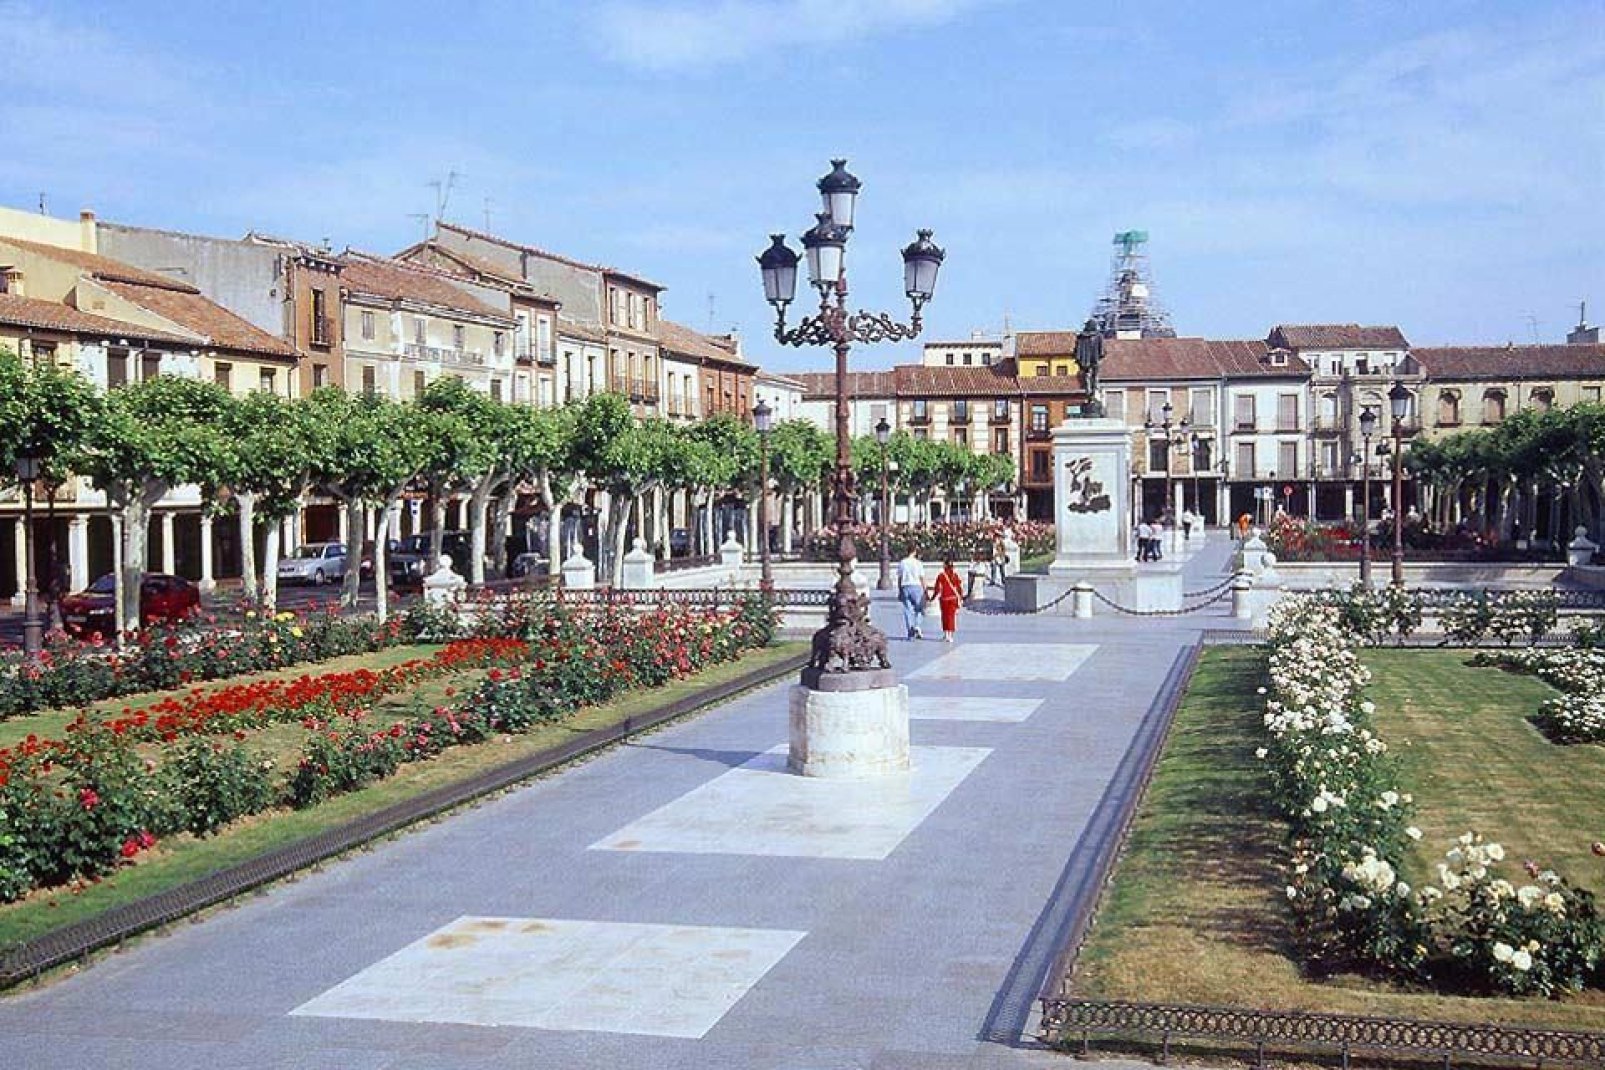 Esta plaza es el centro de la ciudad de Alcalá de Henares. En ella reina una estatua de Don Quijote. Hay que mencionar que el autor Miguel de Cervantes nació en esta ciudad.